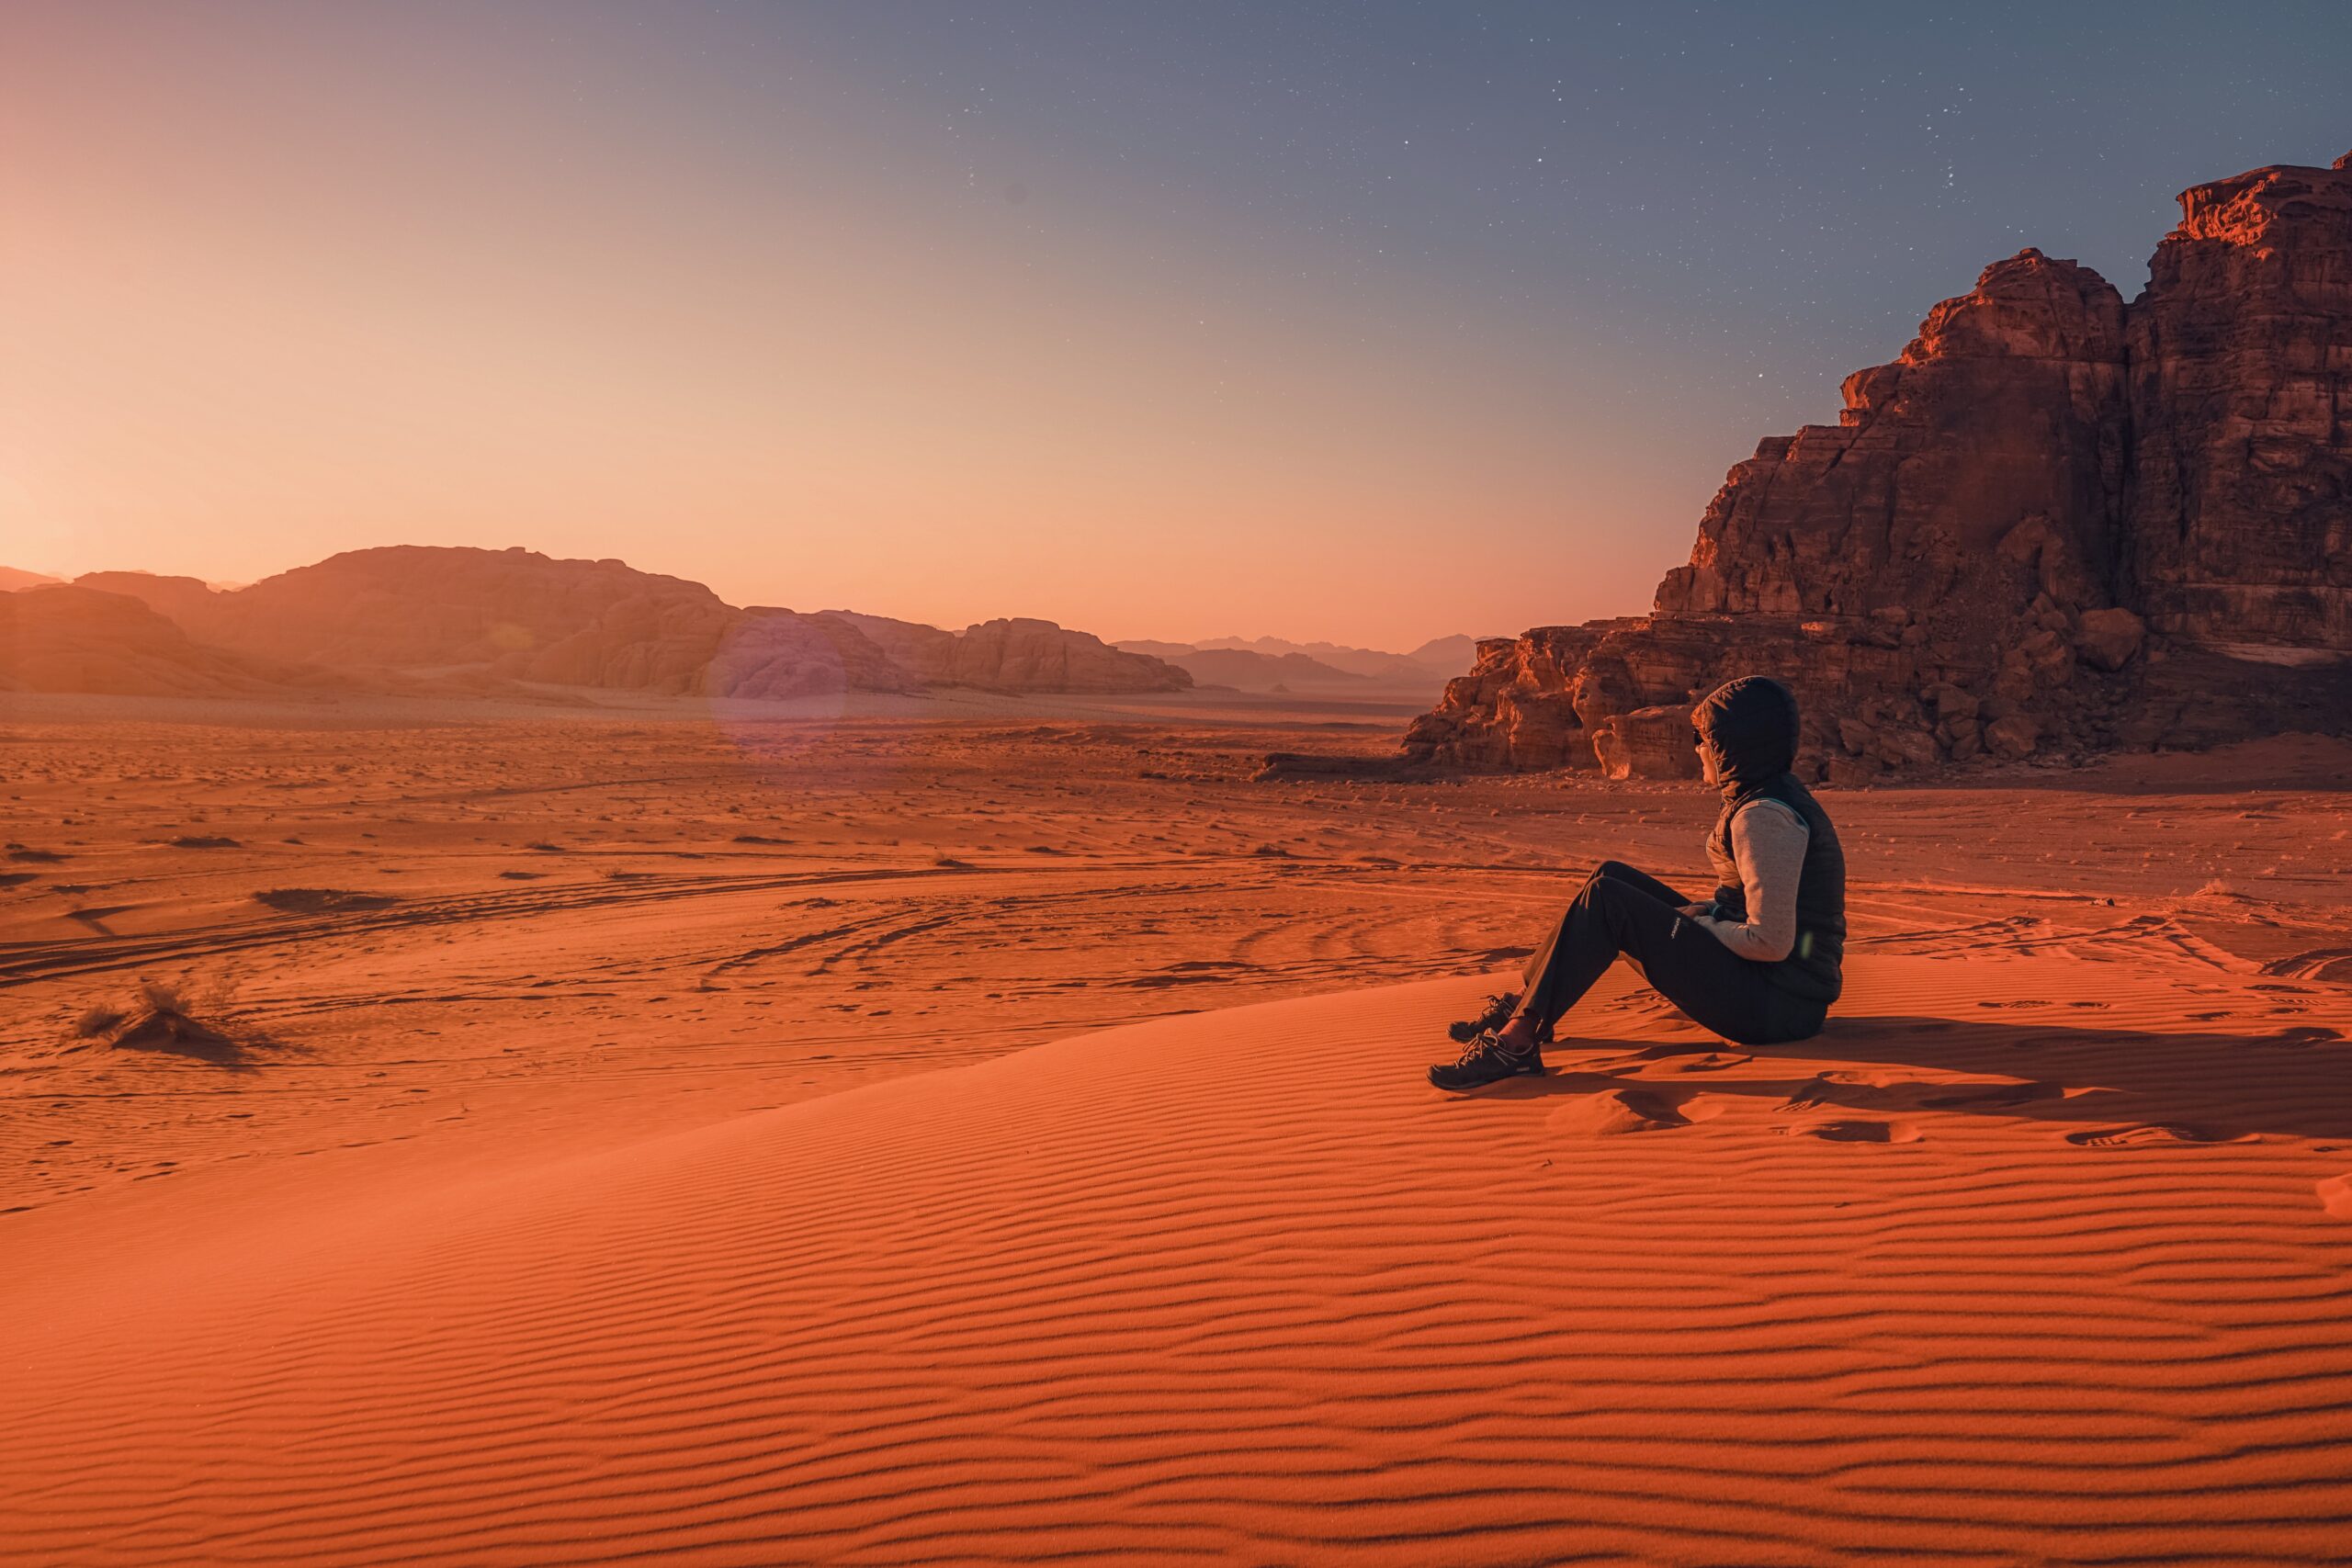 Desert thrills - Adventure in Jordan's Desert Landscape